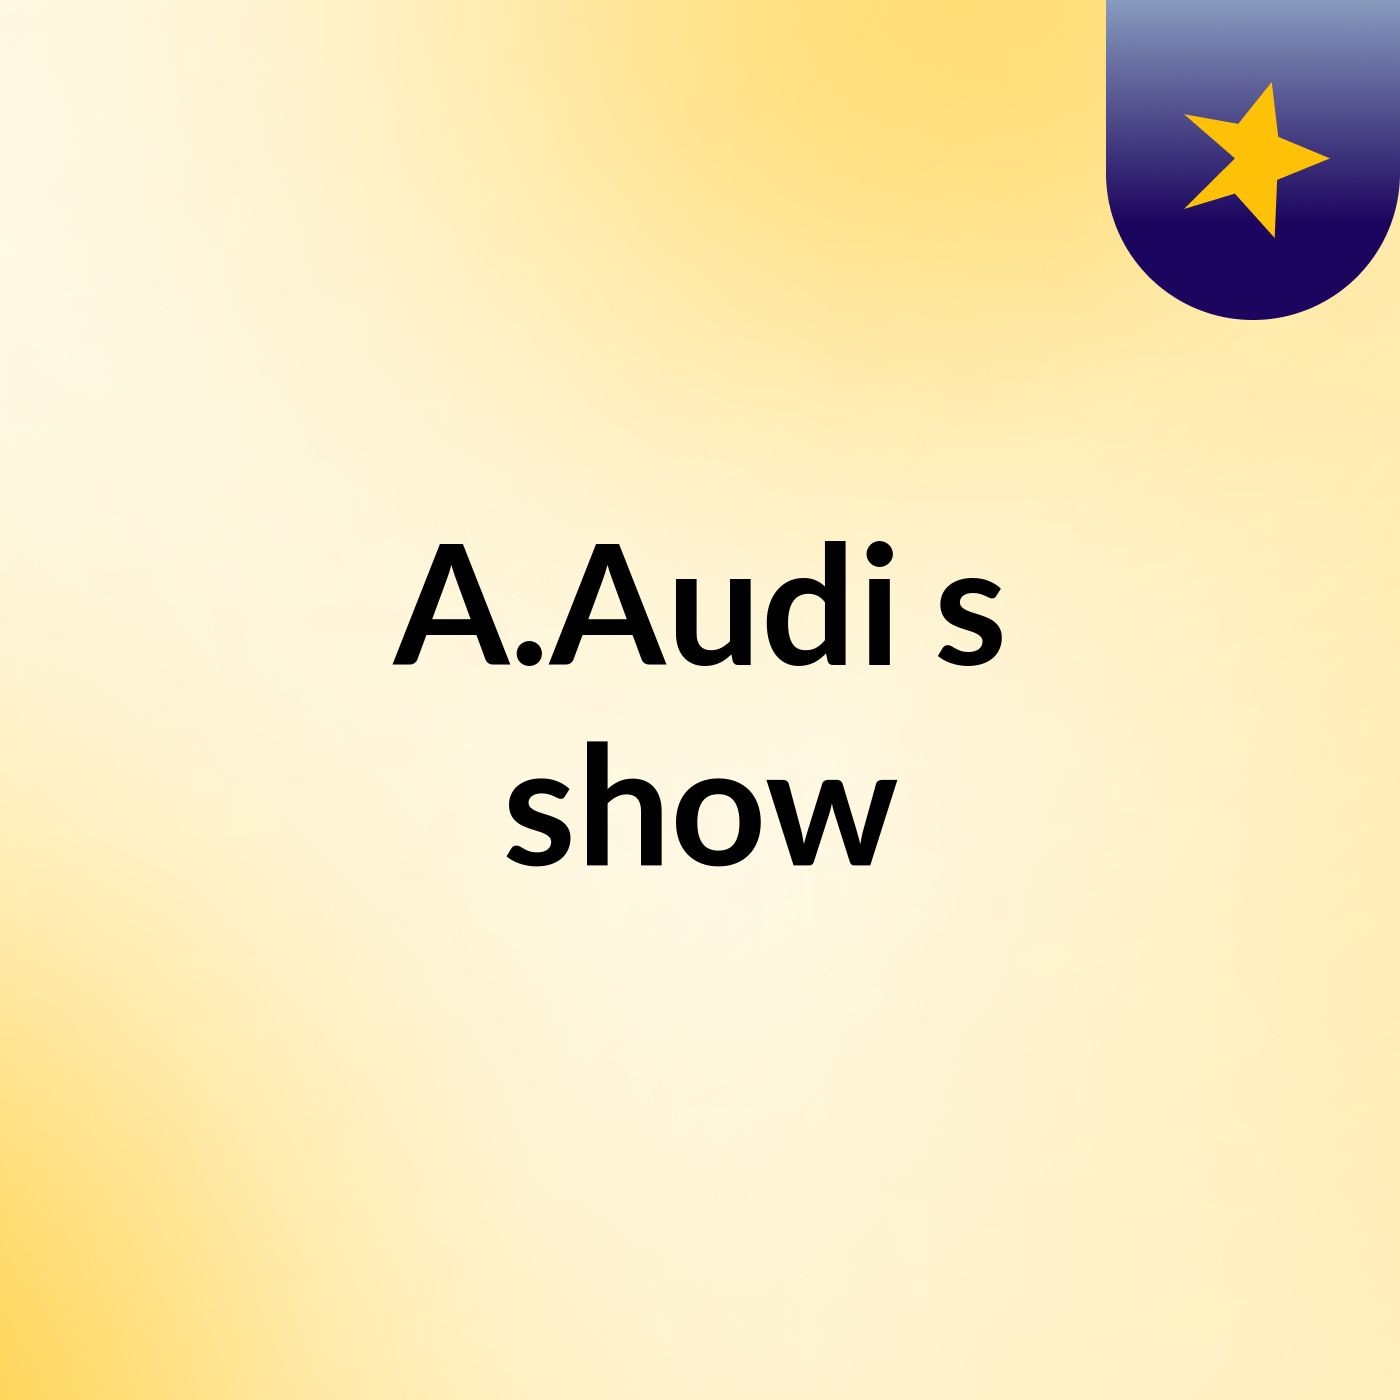 A.Audi's show